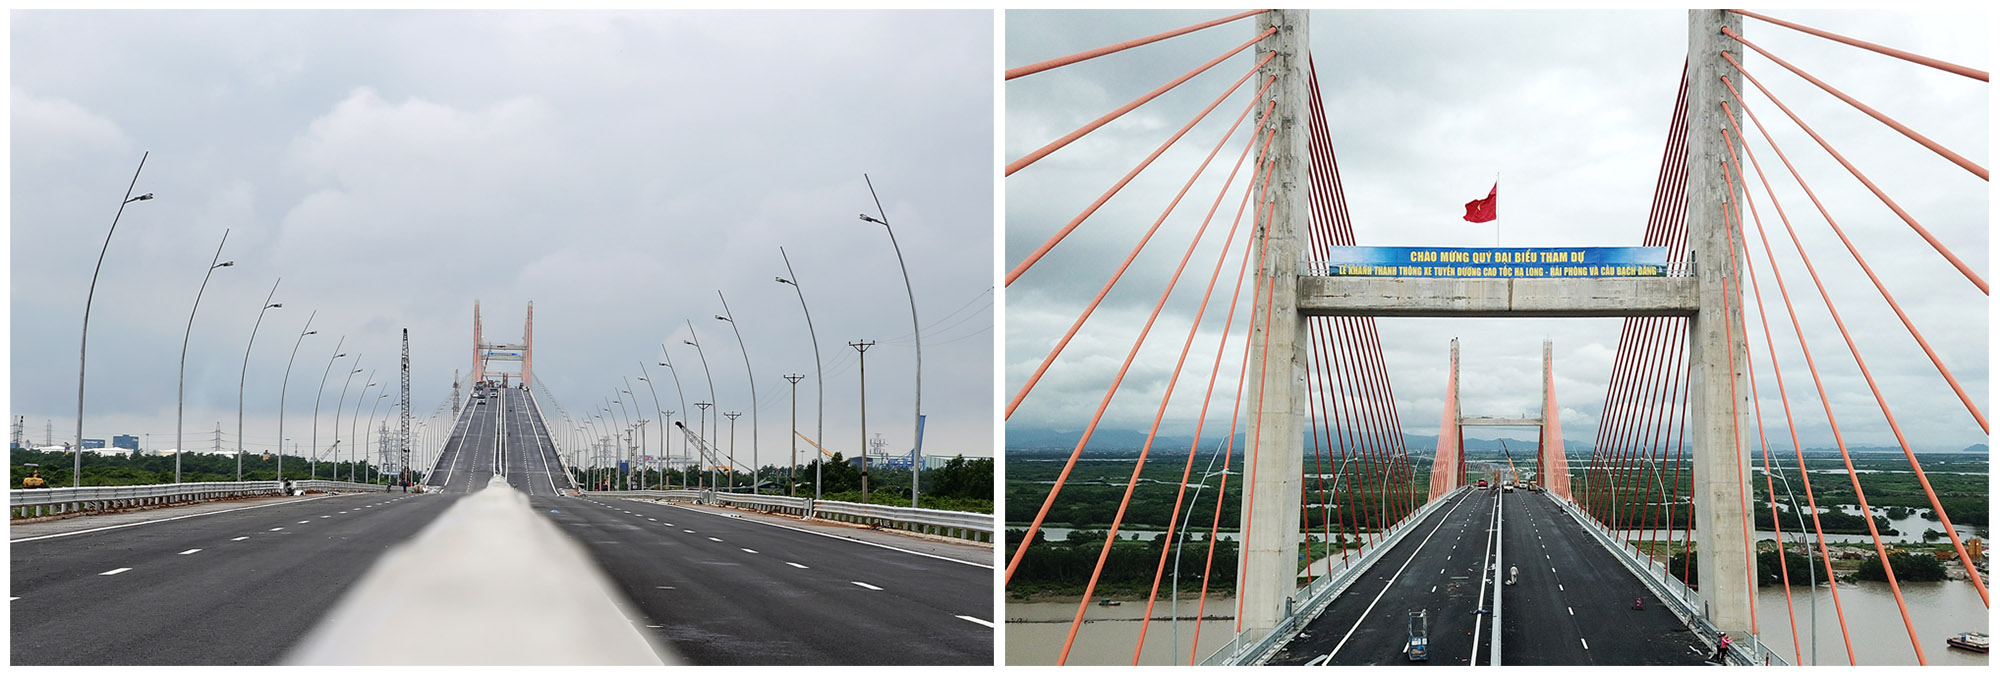 Cầu Bạch Đằng là cây cầu dây văng nhiều nhịp thứ 8 trên thế giới và là cây cầu đầu tiên được tổ chức thi công tại Việt Nam, do người Việt tự thiết kế.